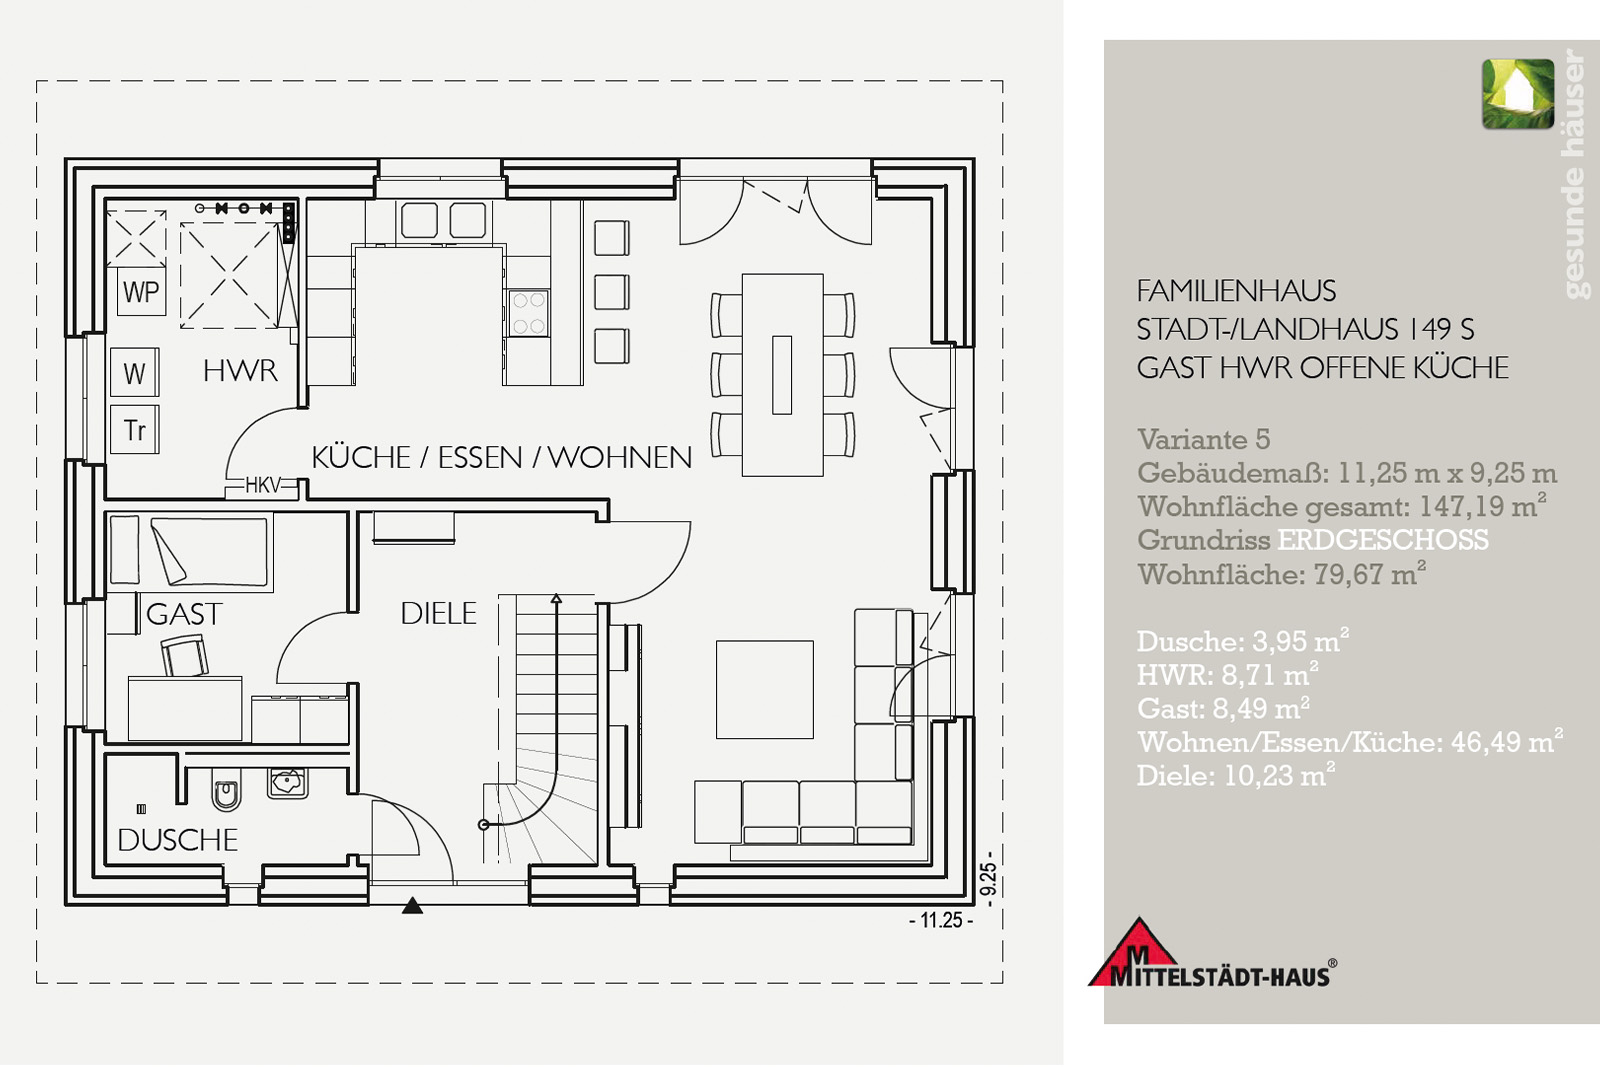 Grundriss-Beispiel Einfamilienhaus 149S - Mit offener Küche und Gästezimmer